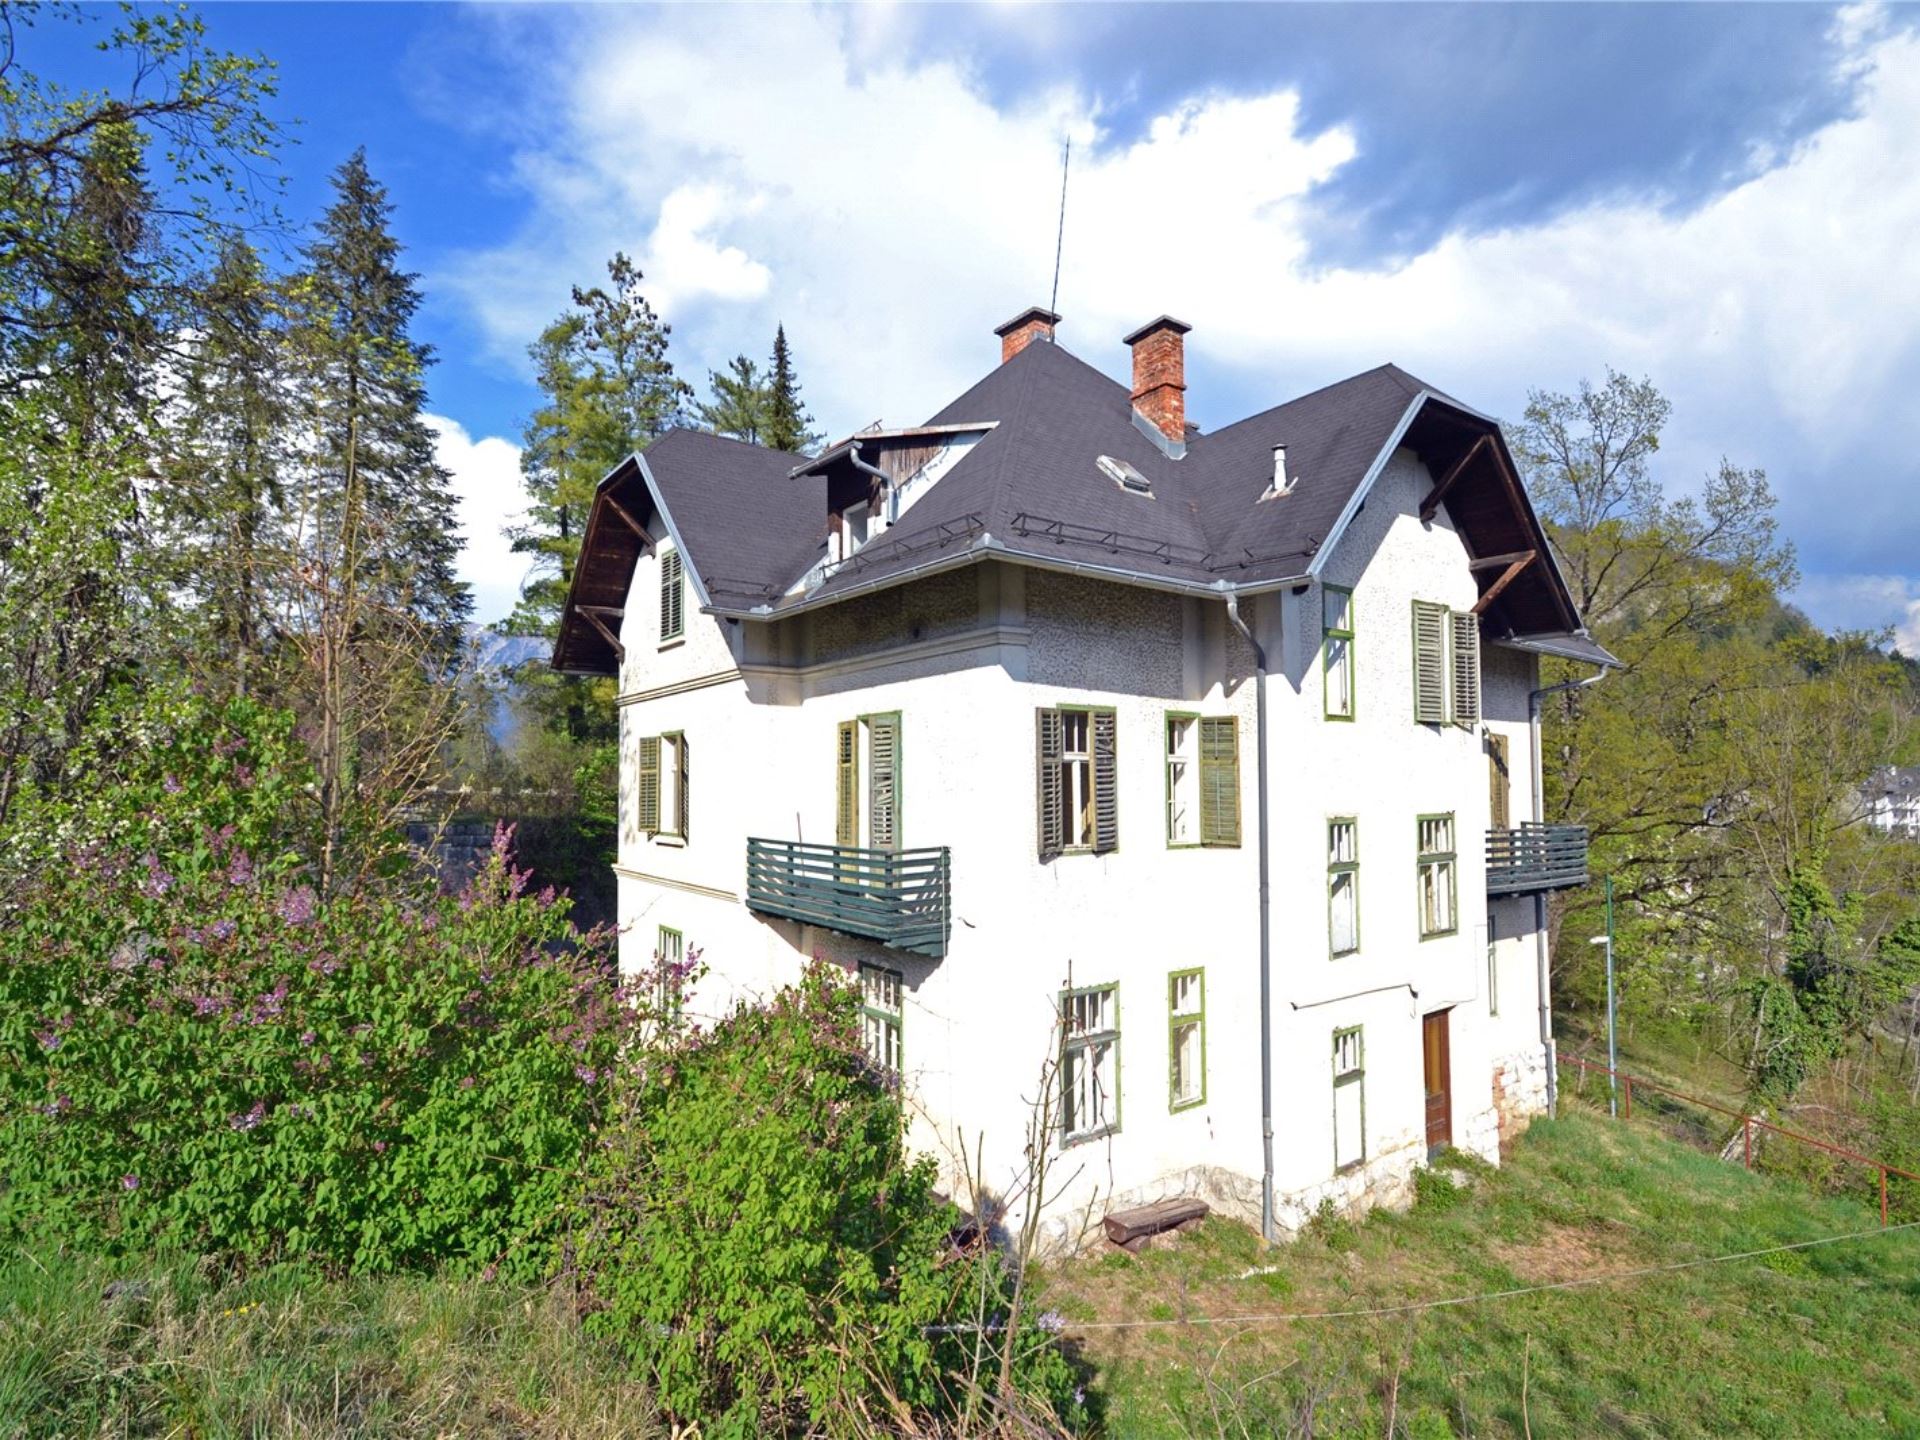 For sale Villa Tamara for renovation Bled Real Estate